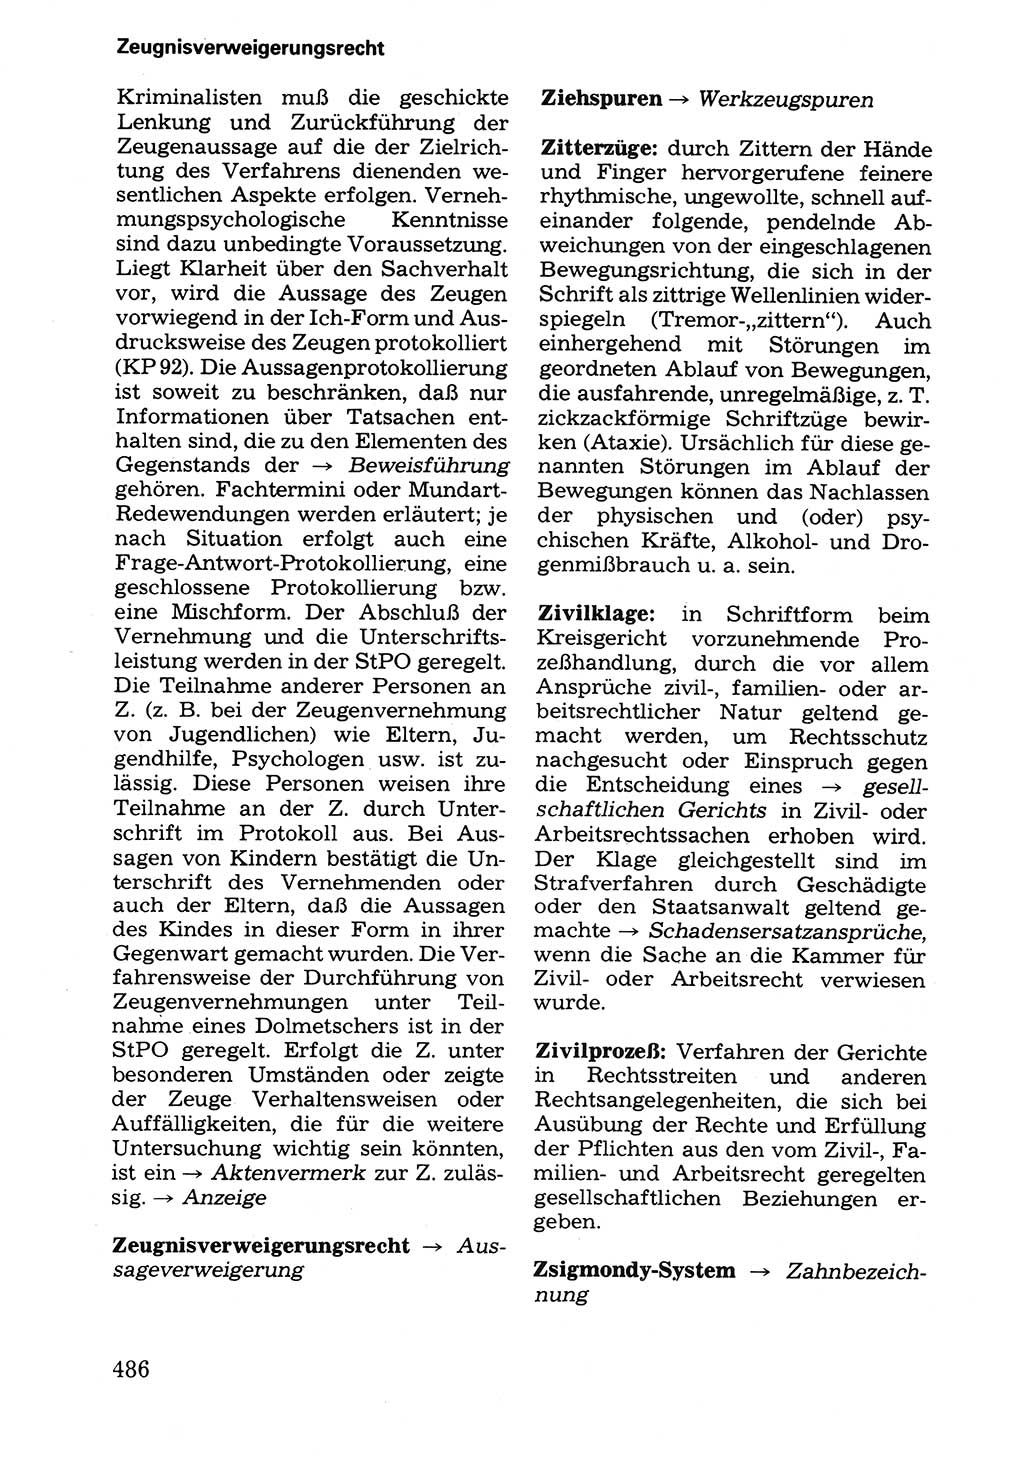 Wörterbuch der sozialistischen Kriminalistik [Deutsche Demokratische Republik (DDR)] 1981, Seite 486 (Wb. soz. Krim. DDR 1981, S. 486)